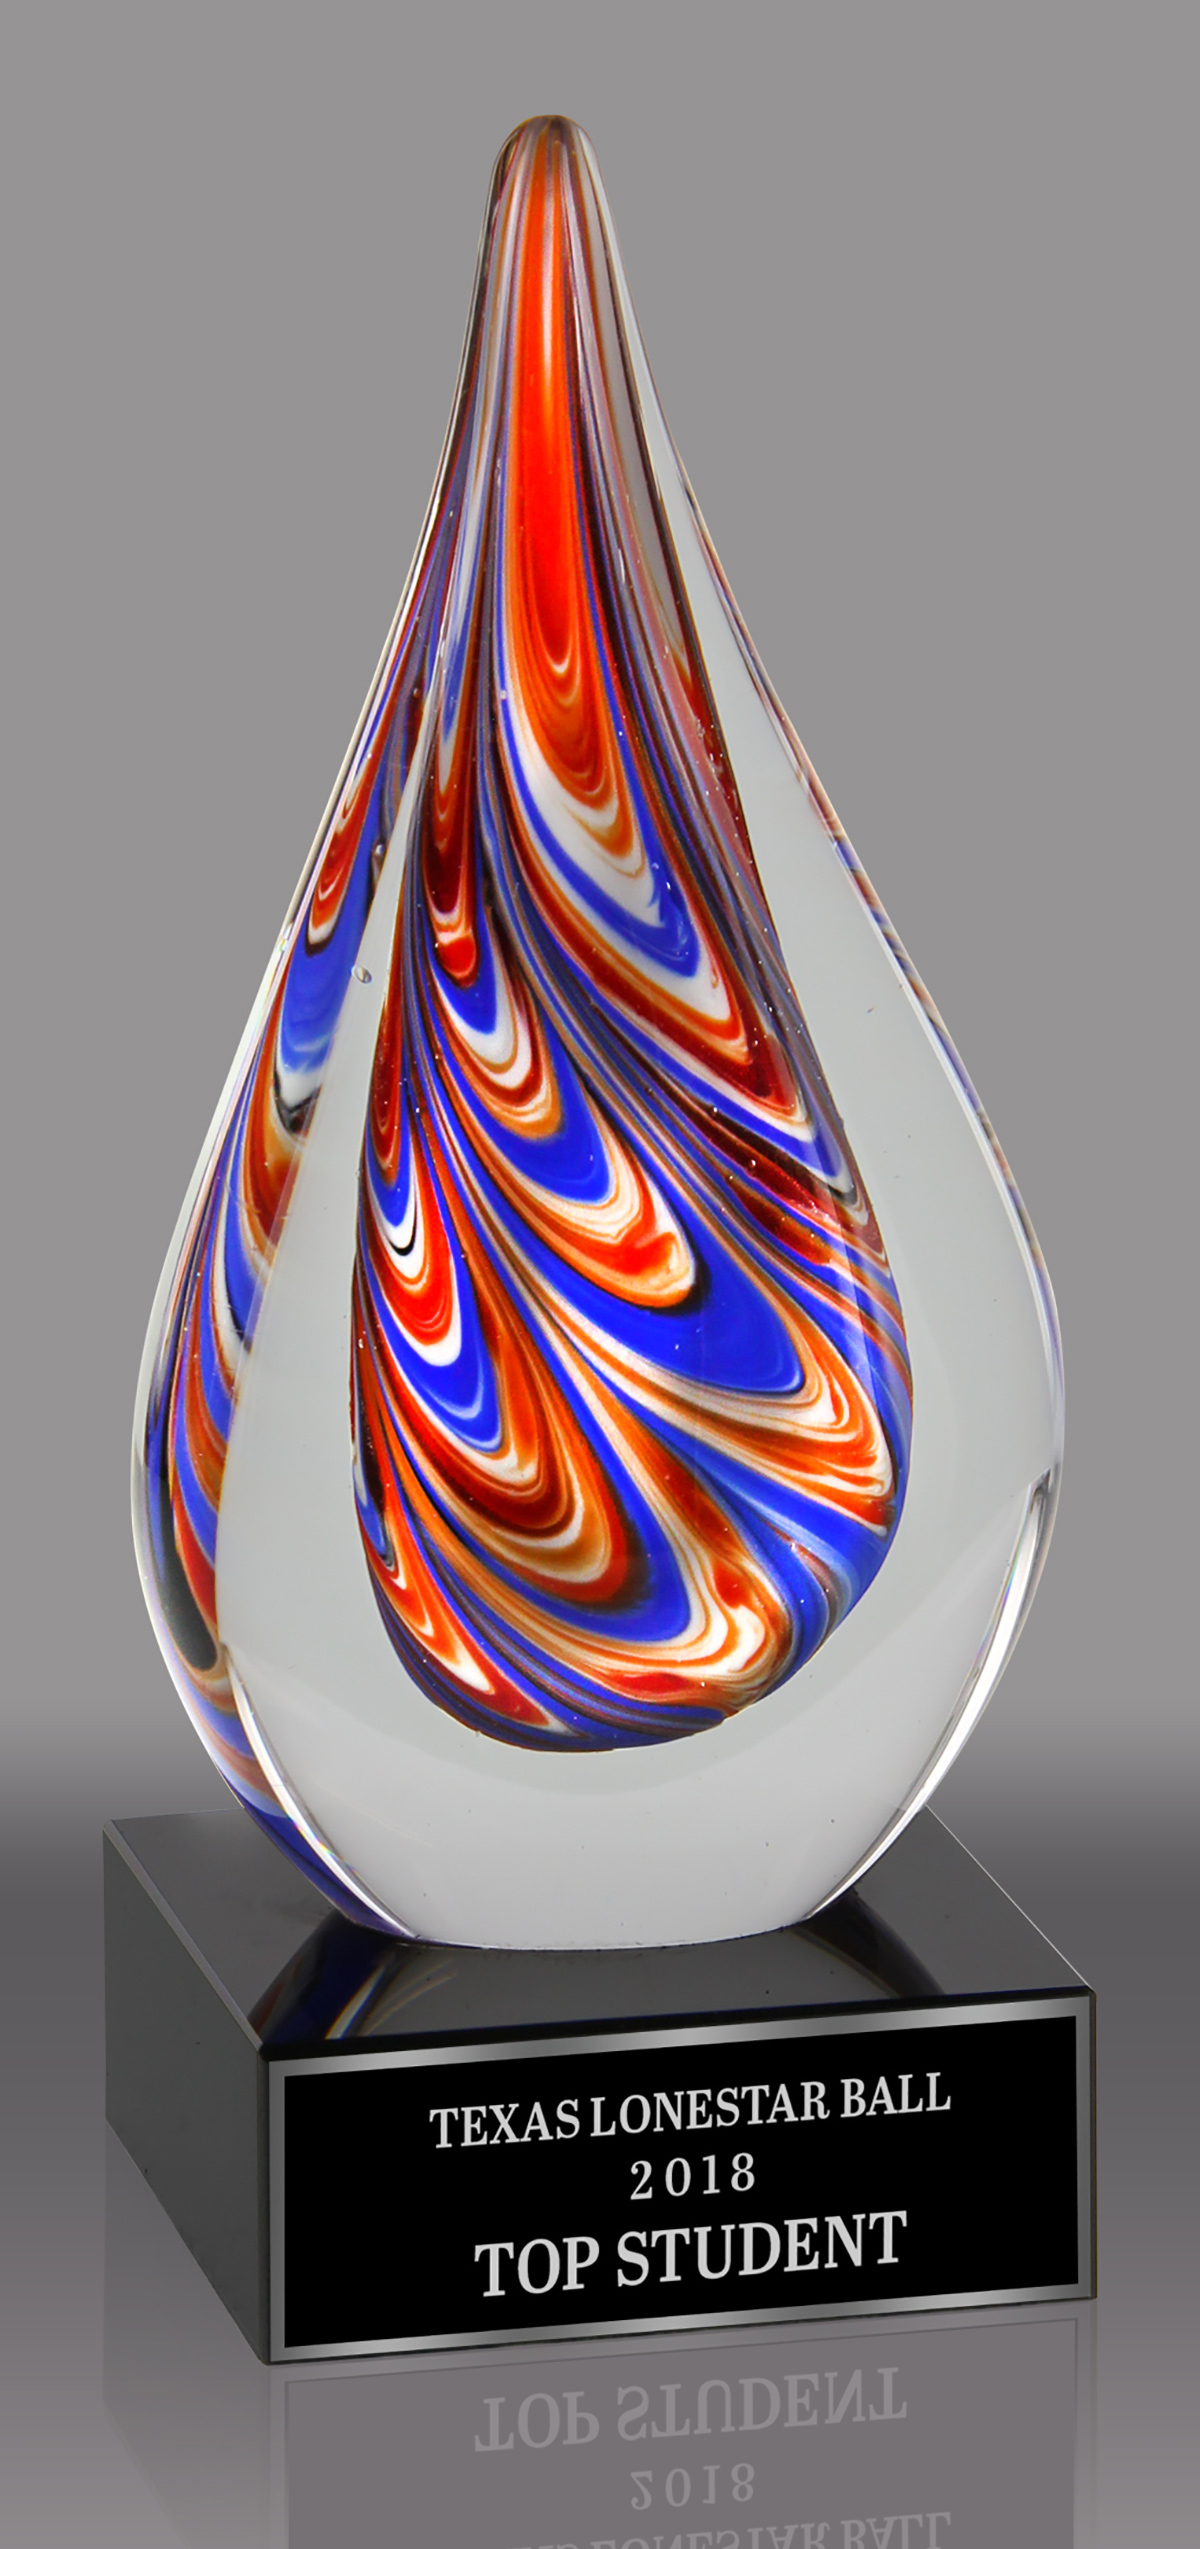 Teardrop-Shaped Art Glass Award